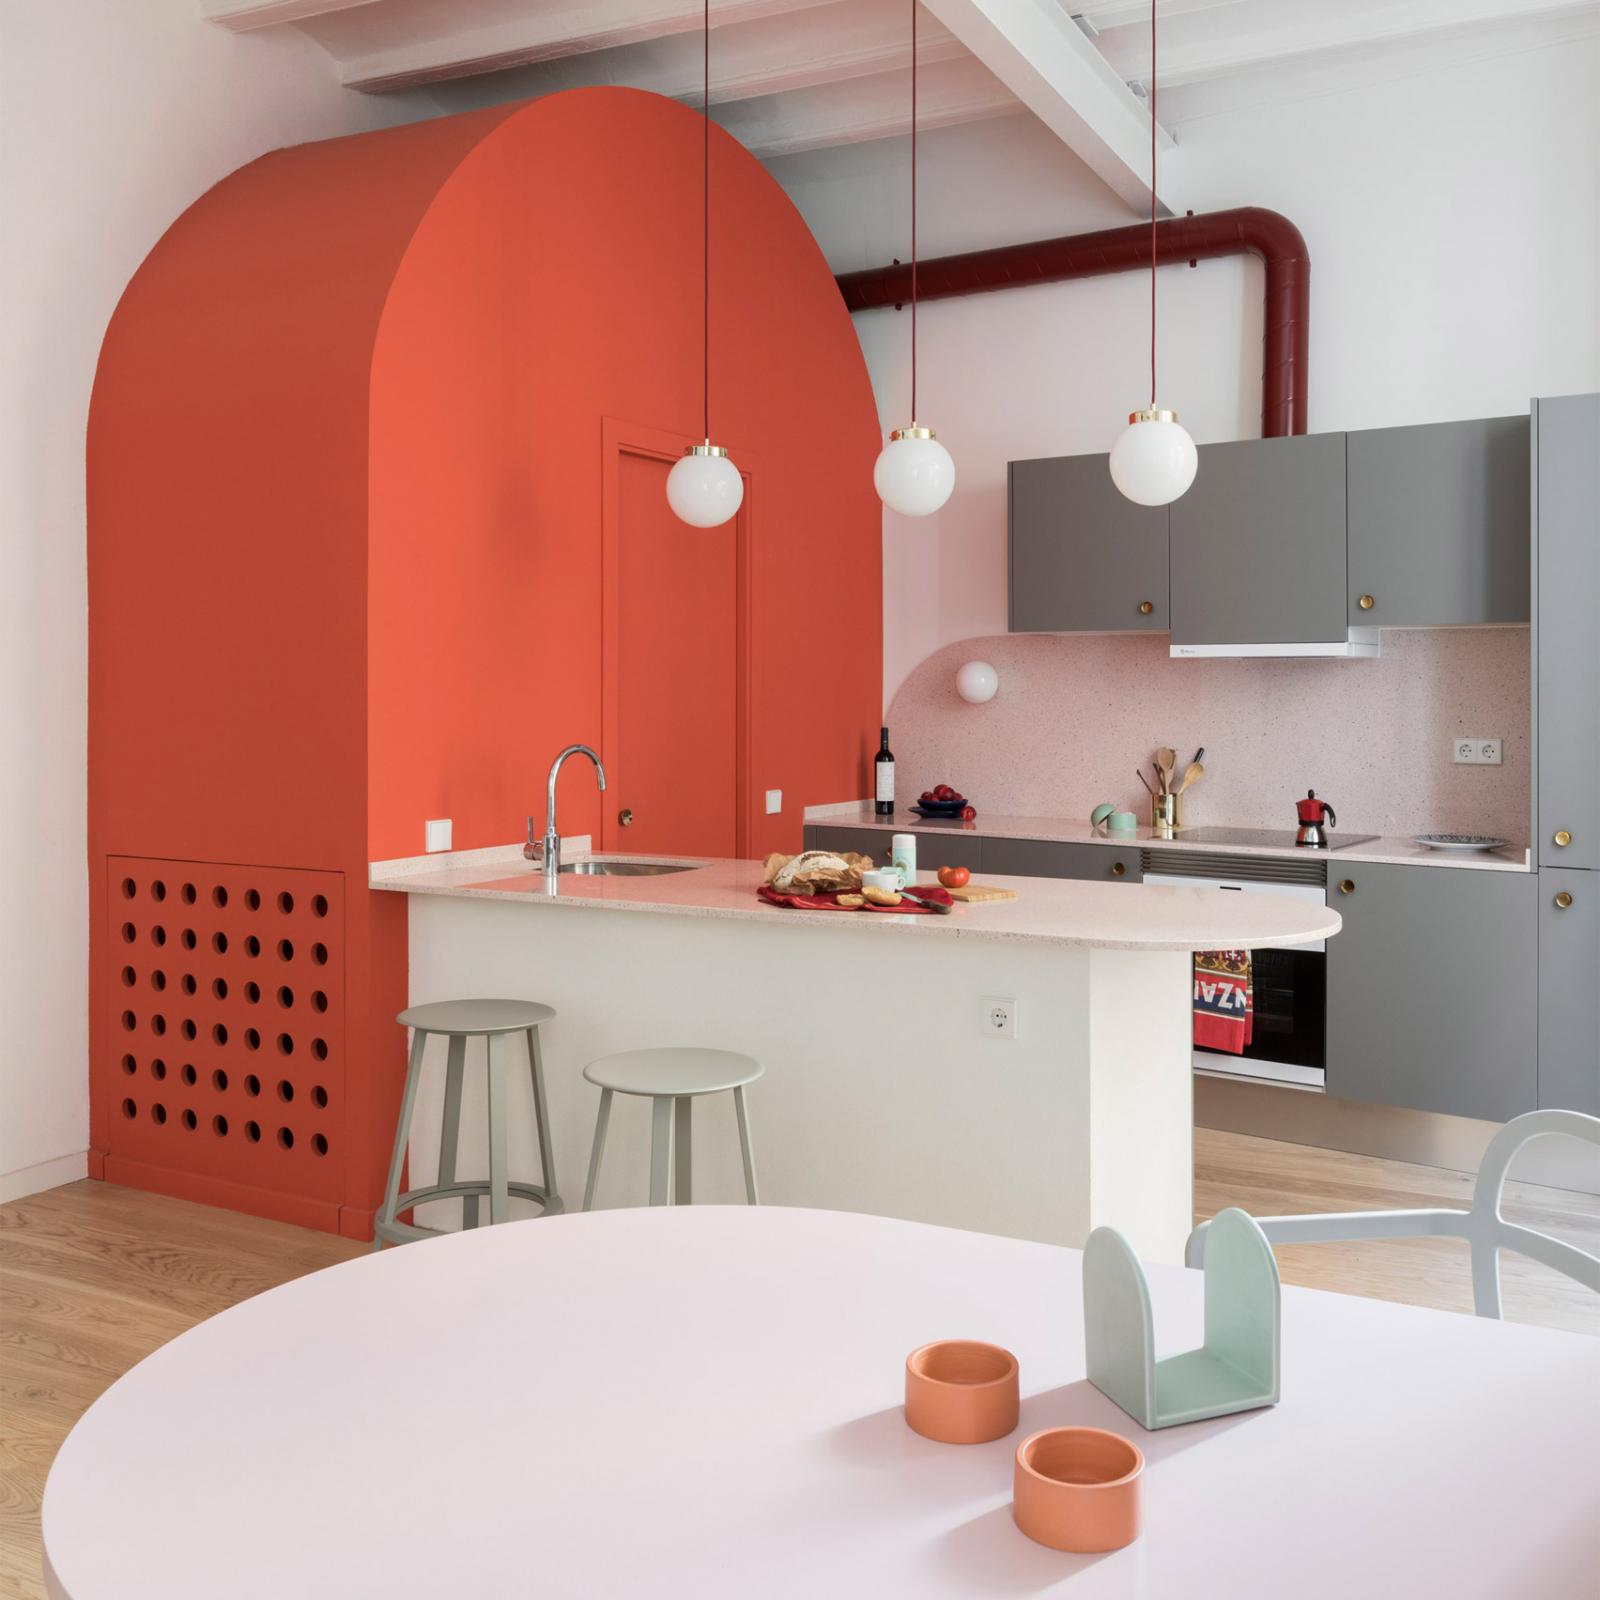 Phòng bếp trong căn hộ phong cách thế kỷ XIII ở Tây Ban Nha gây ấn tượng với thạch anh màu đỏ dùng để chế tác bàn ăn, được cân bằng bởi dụng cụ nhà bếp màu xám, tay cầm bằng đồng, khối vòm màu san hô giấu nhẹm nhà vệ sinh nhỏ.